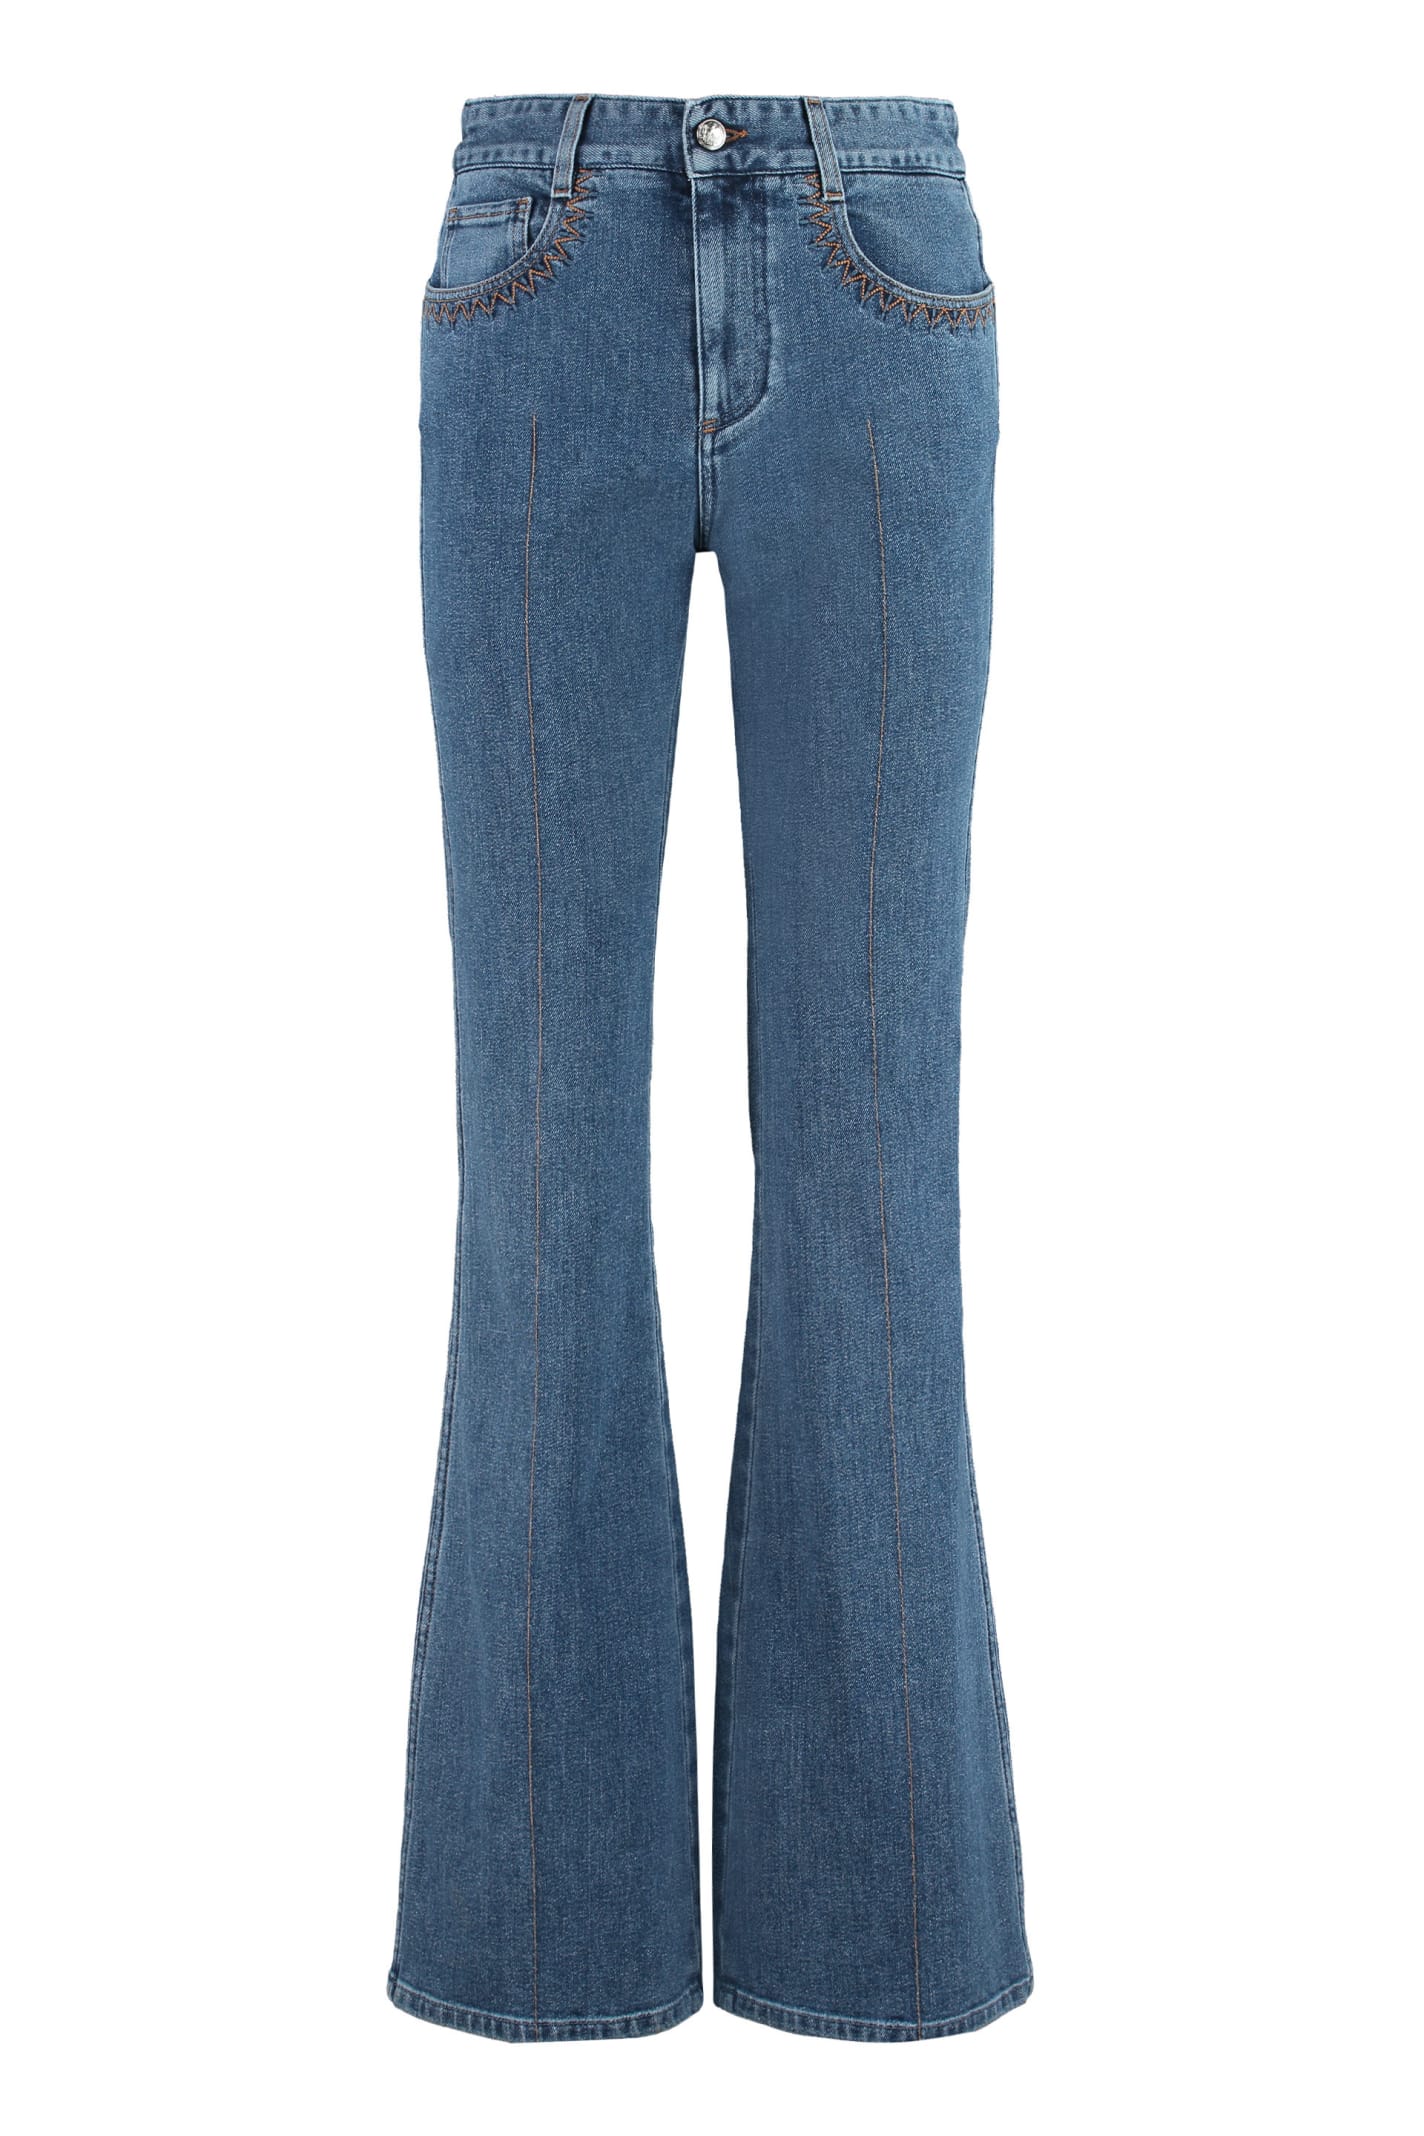 Chloé 5-pocket Jeans